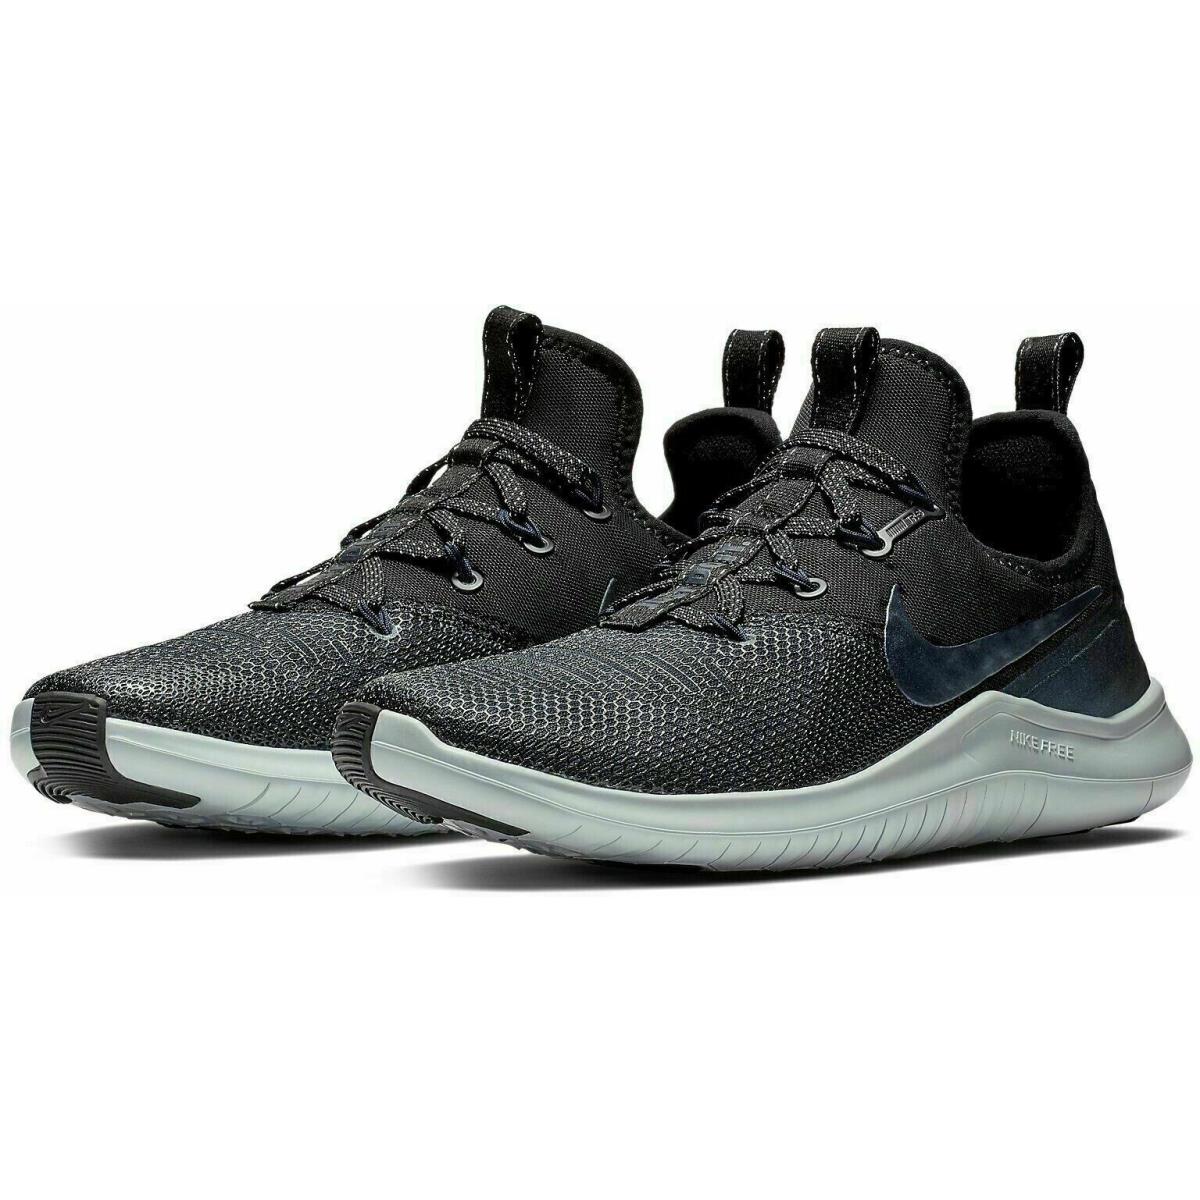 Nike Free TR 8 Sneaker Shoes AJ7833-044 Women`s Shoe Size 6 `metallic Black` - Black/Metallic Armory Navy